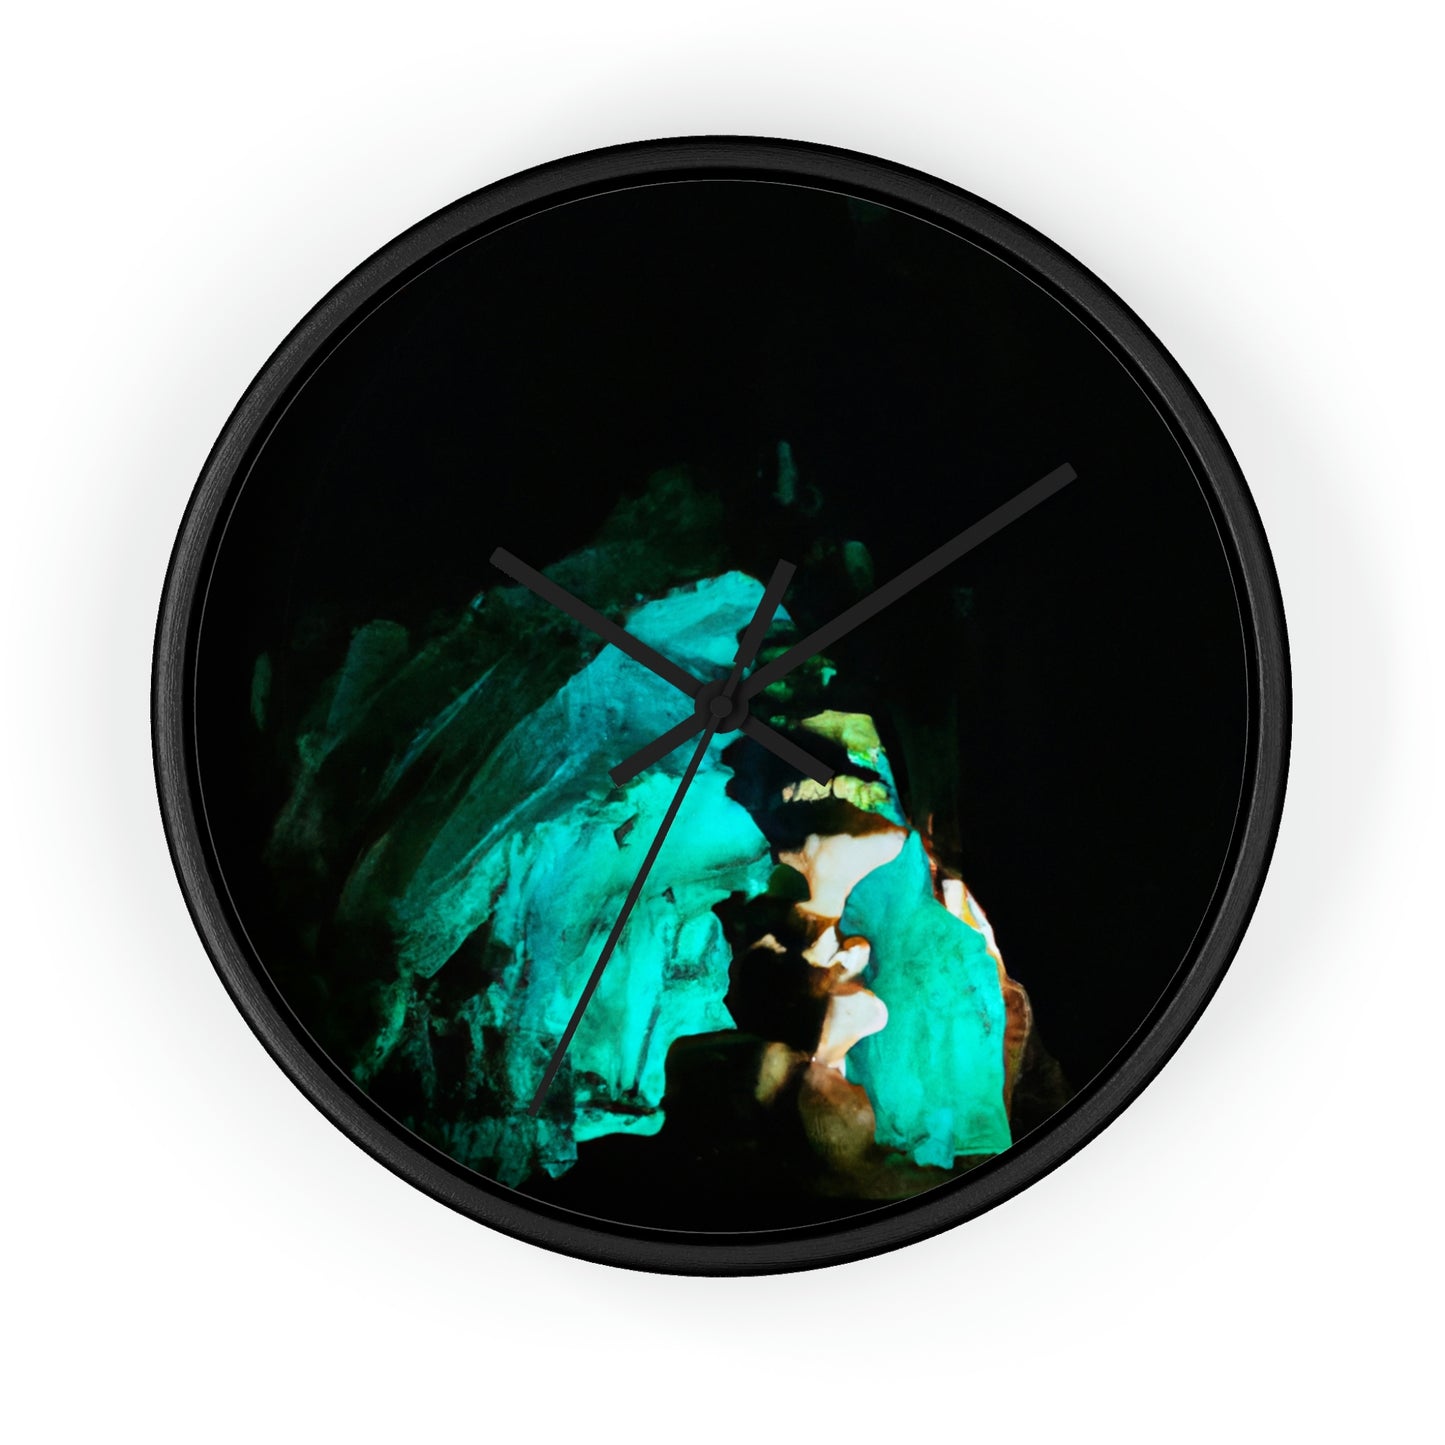 La reliquia reluciente de la cueva - El reloj de pared alienígena